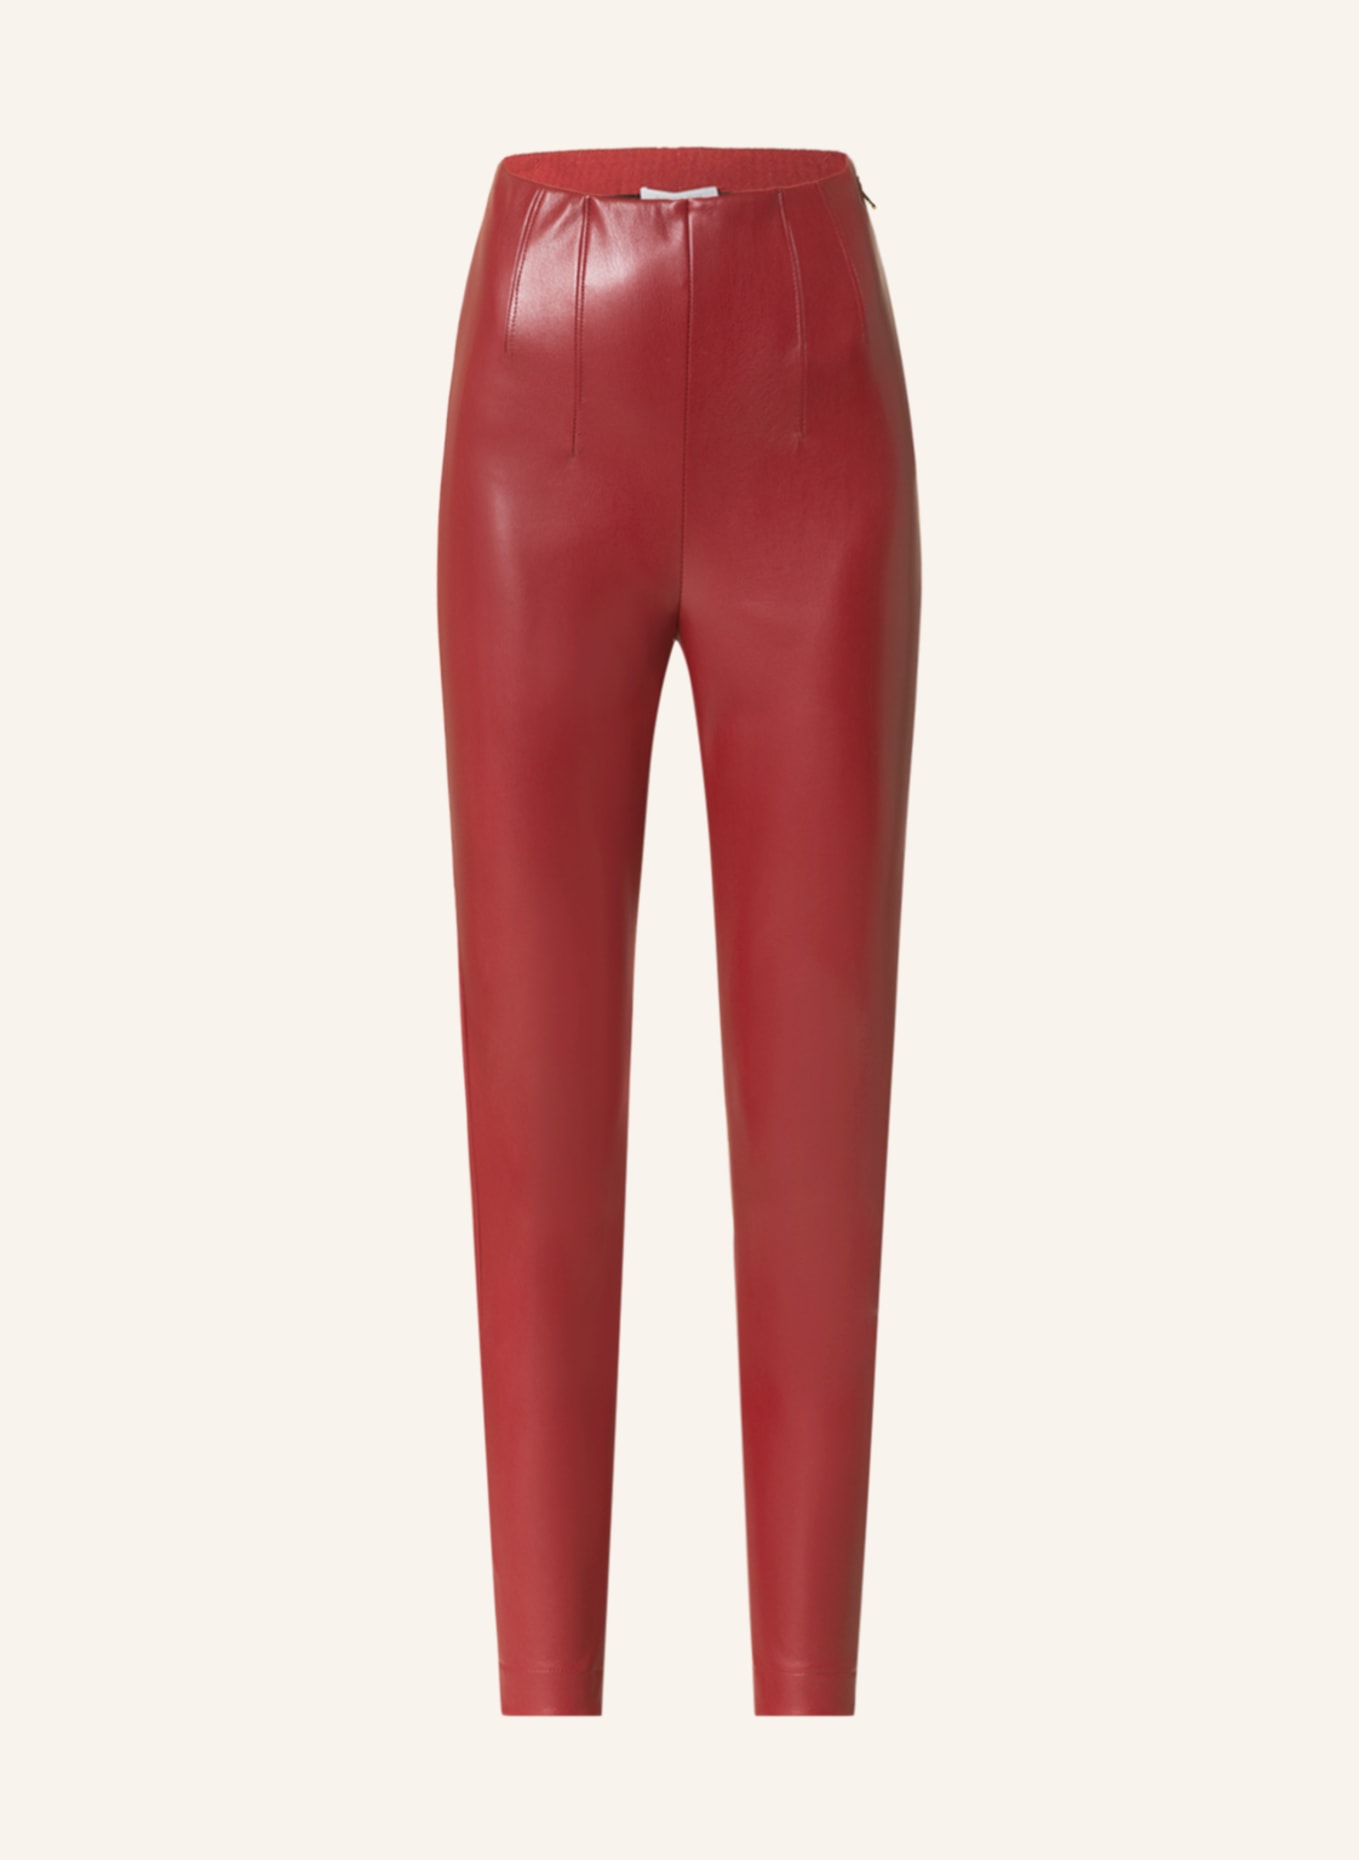 PATRIZIA PEPE Hose in Lederoptik, Farbe: DUNKELROT (Bild 1)